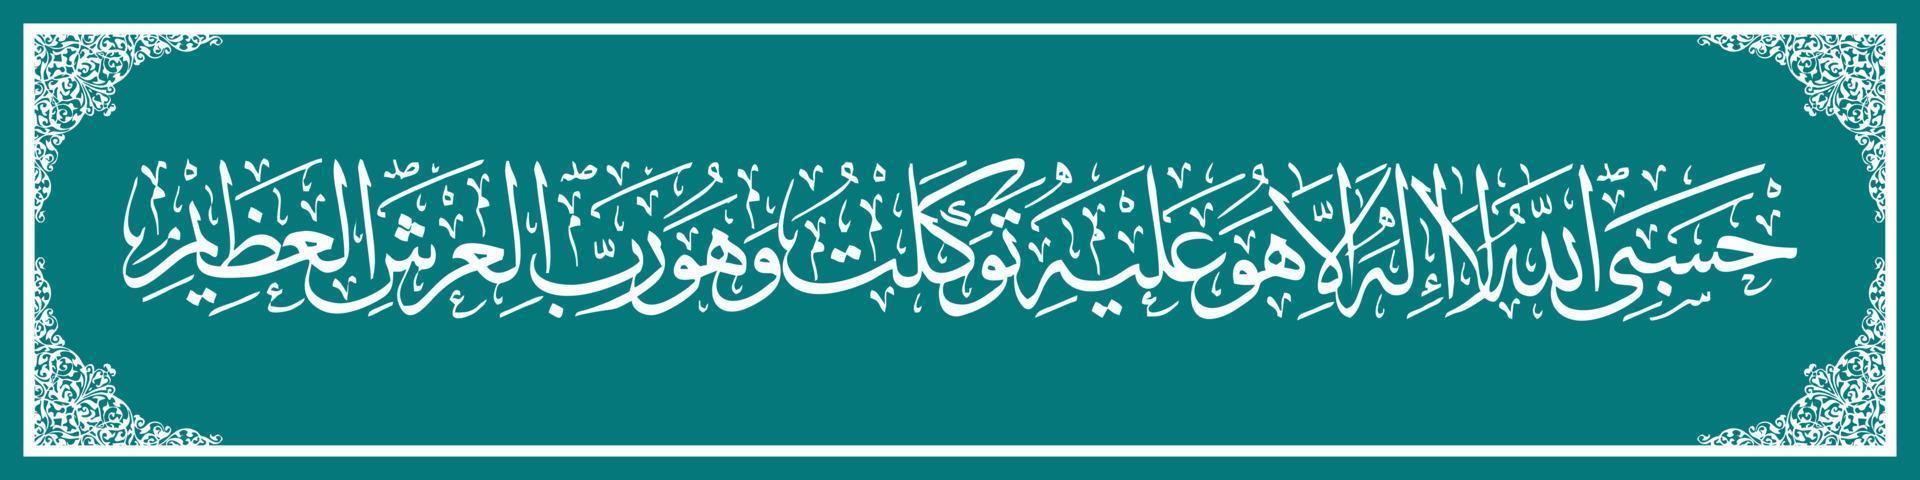 caligrafia árabe al quran surah em taubah 129, traduza assim, se eles se afastarem da fé, então diga muhammad, alá é suficiente para mim, não há deus além dele. vetor